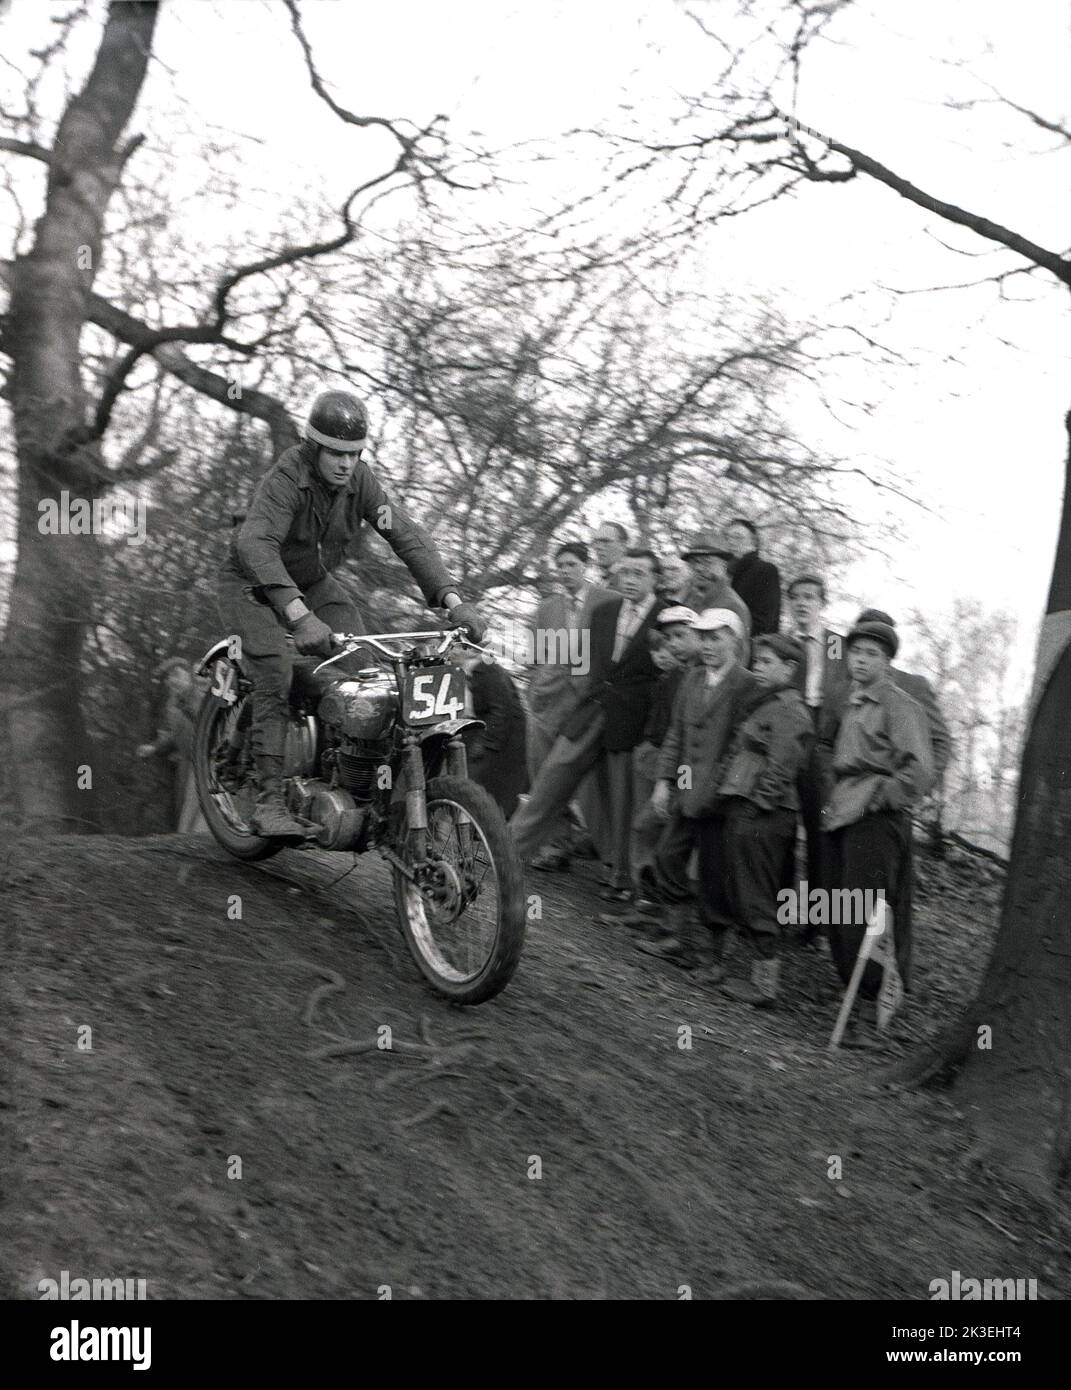 1954, histórico, en el exterior, en un terreno escarpado en un bosque, espectadores viendo a un competidor montando una motocicleta de la época, en una carrera de lucha o prueba en Seacroft, Leeds, Inglaterra, Reino Unido, organizada por el West Leeds Motor Club. Foto de stock